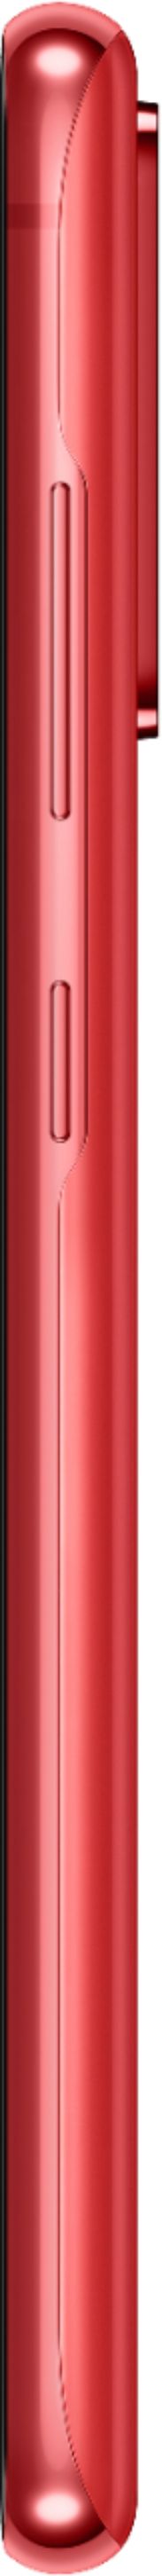 Samsung Galaxy S20FE 2021 6GB/128GB 6.5´´ Dual Sim Red